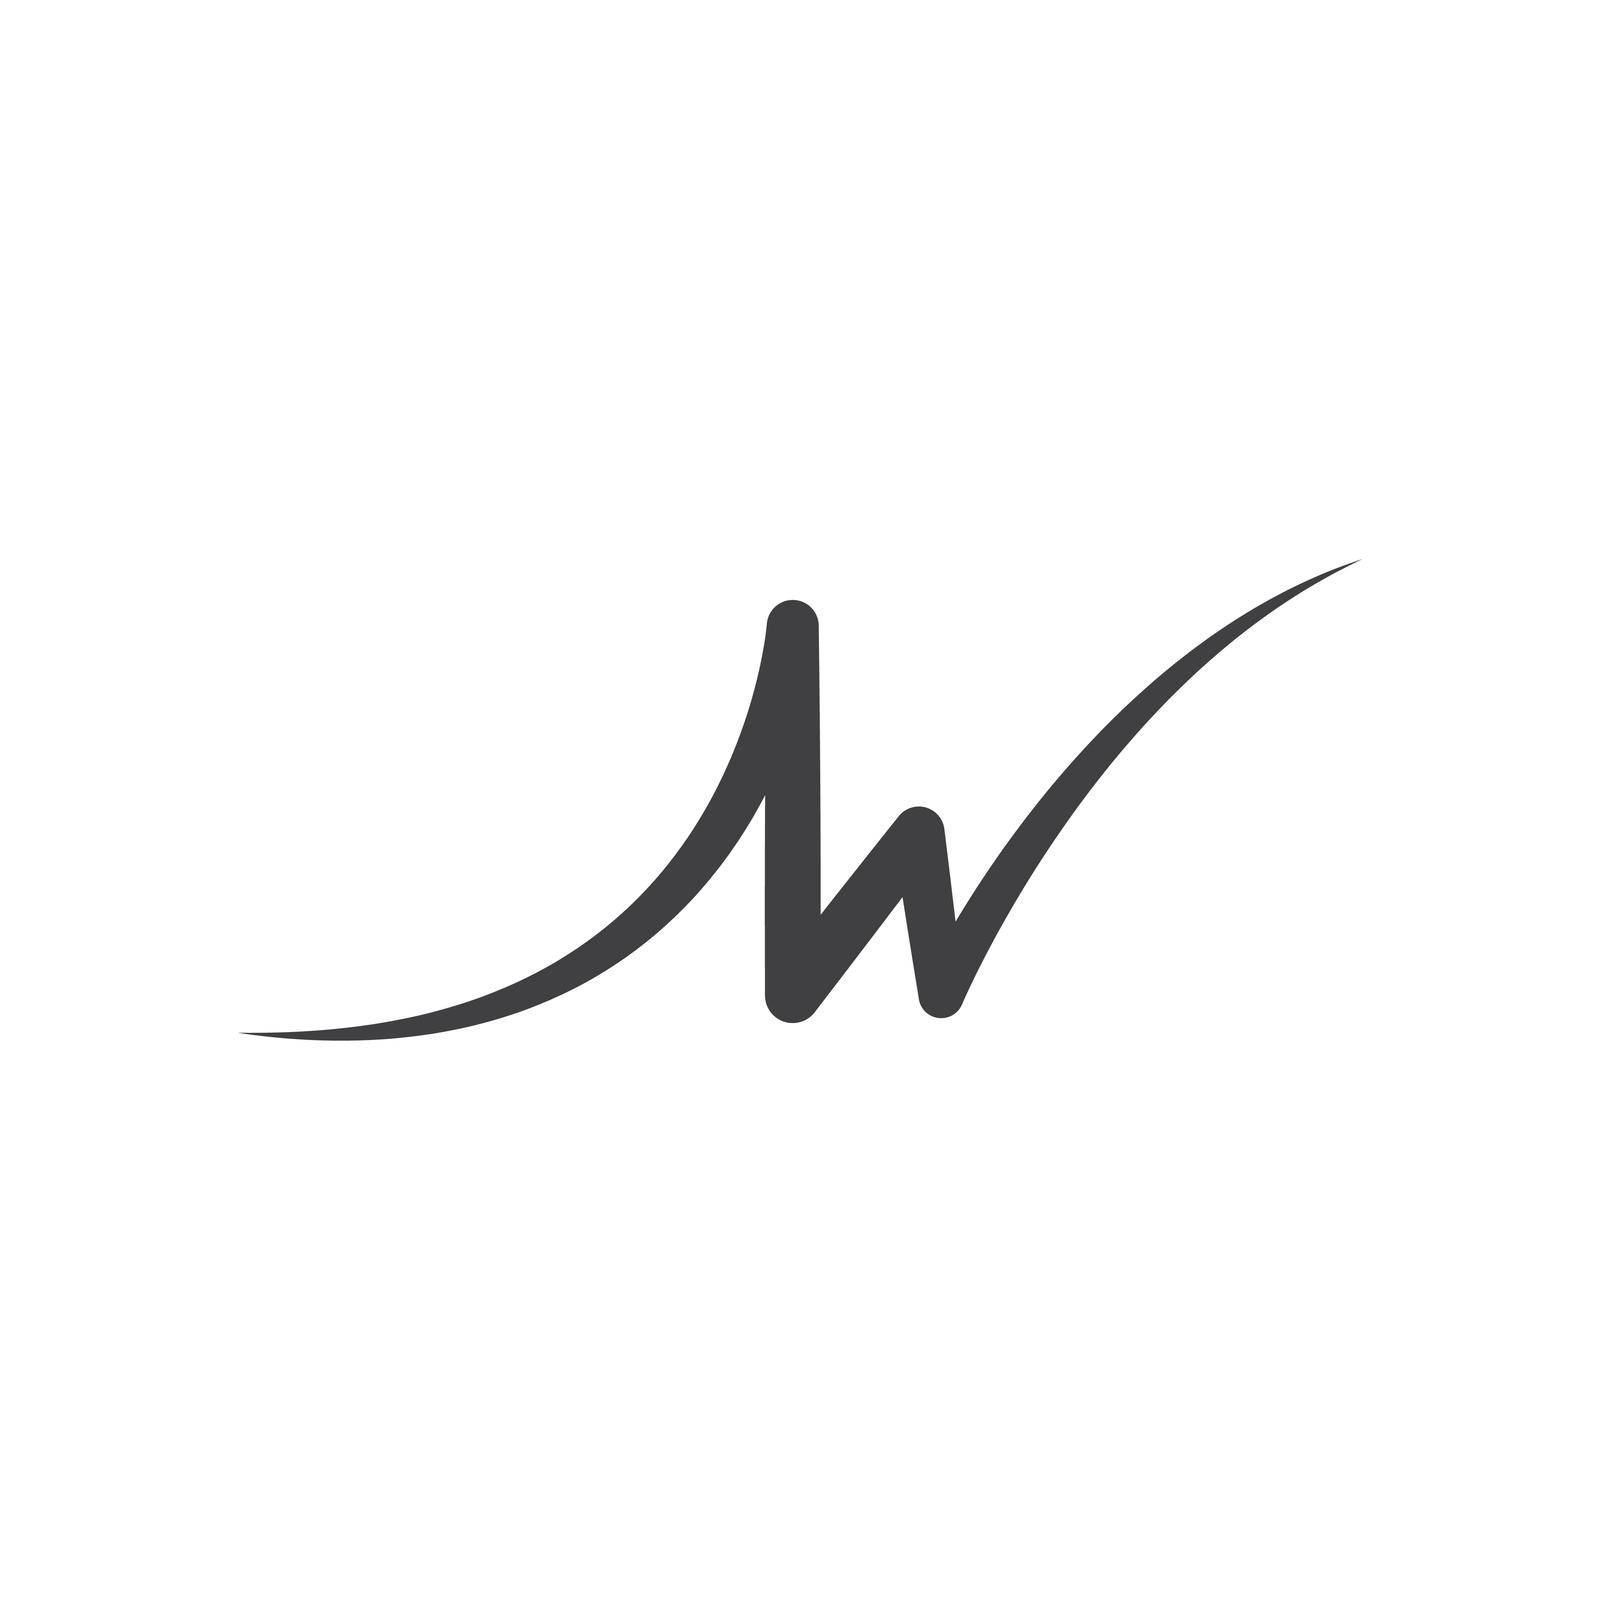 W letter logo vector illustration